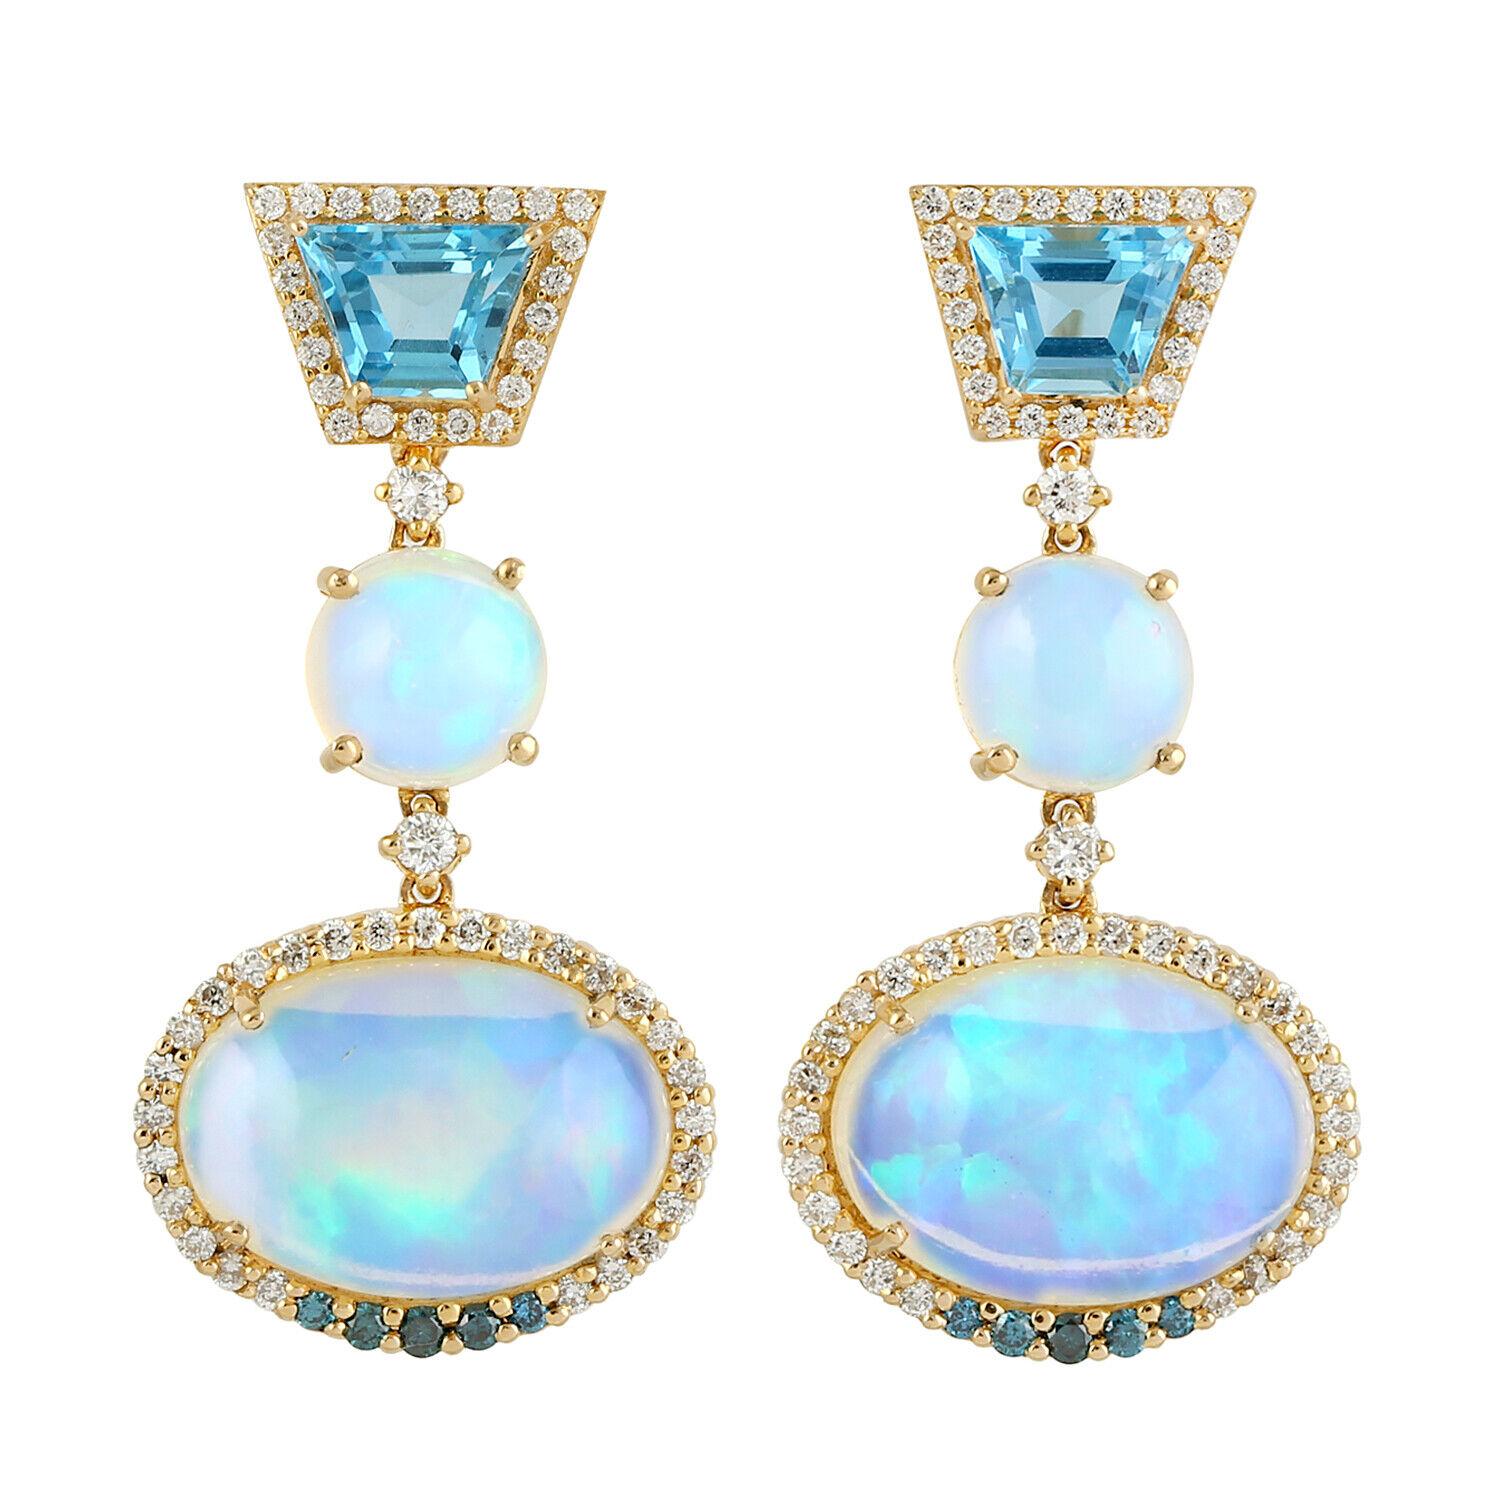 Modern Meghna Jewels 9.51 Carat Opal Topaz Diamond 14 Karat Gold Earrings For Sale